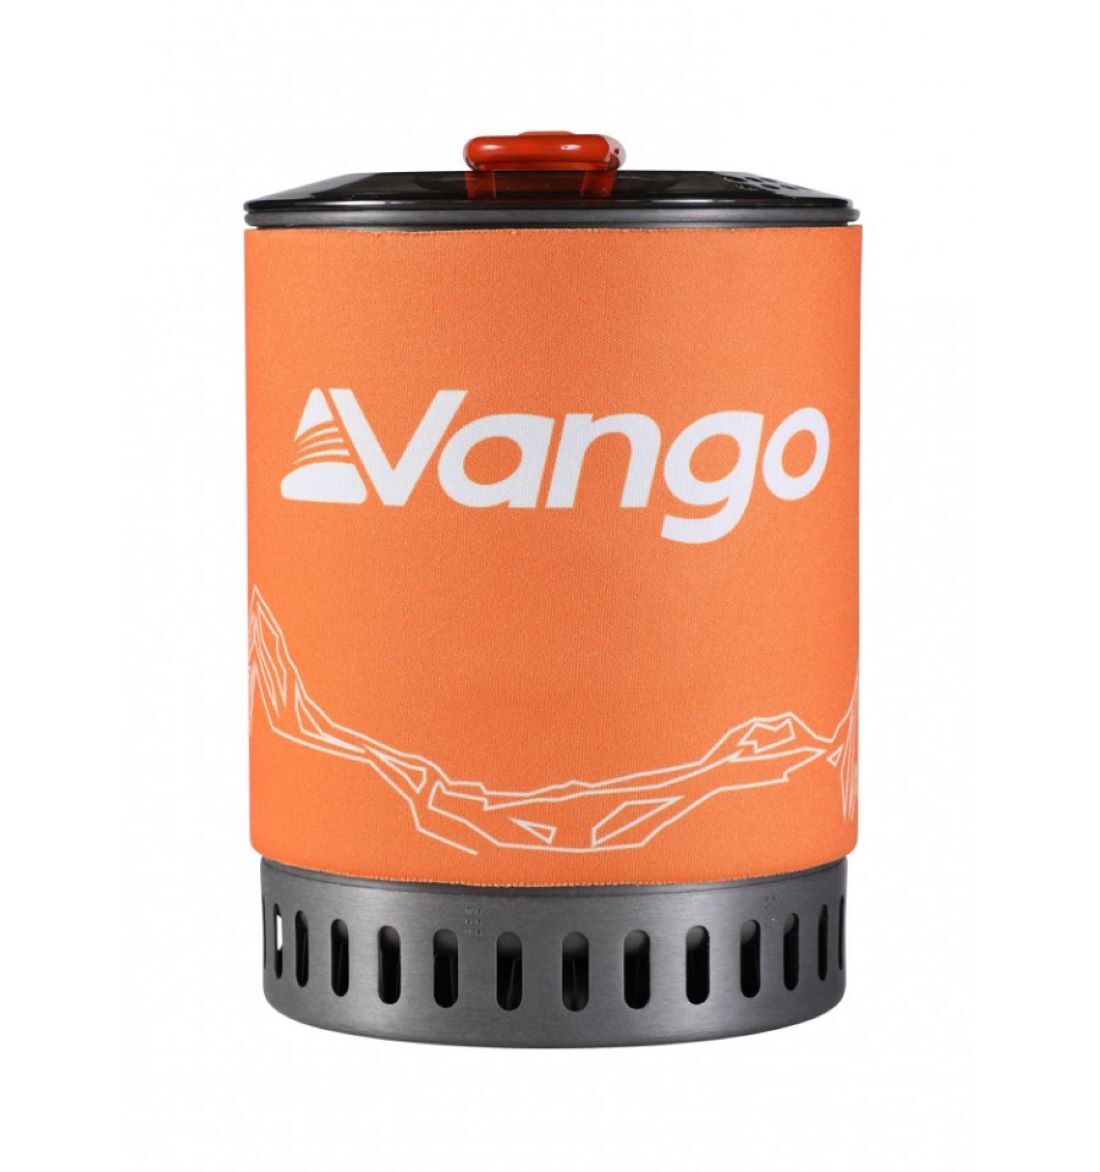 Vango Ultralight Heat Exchanger Cook Kit - Cooking set